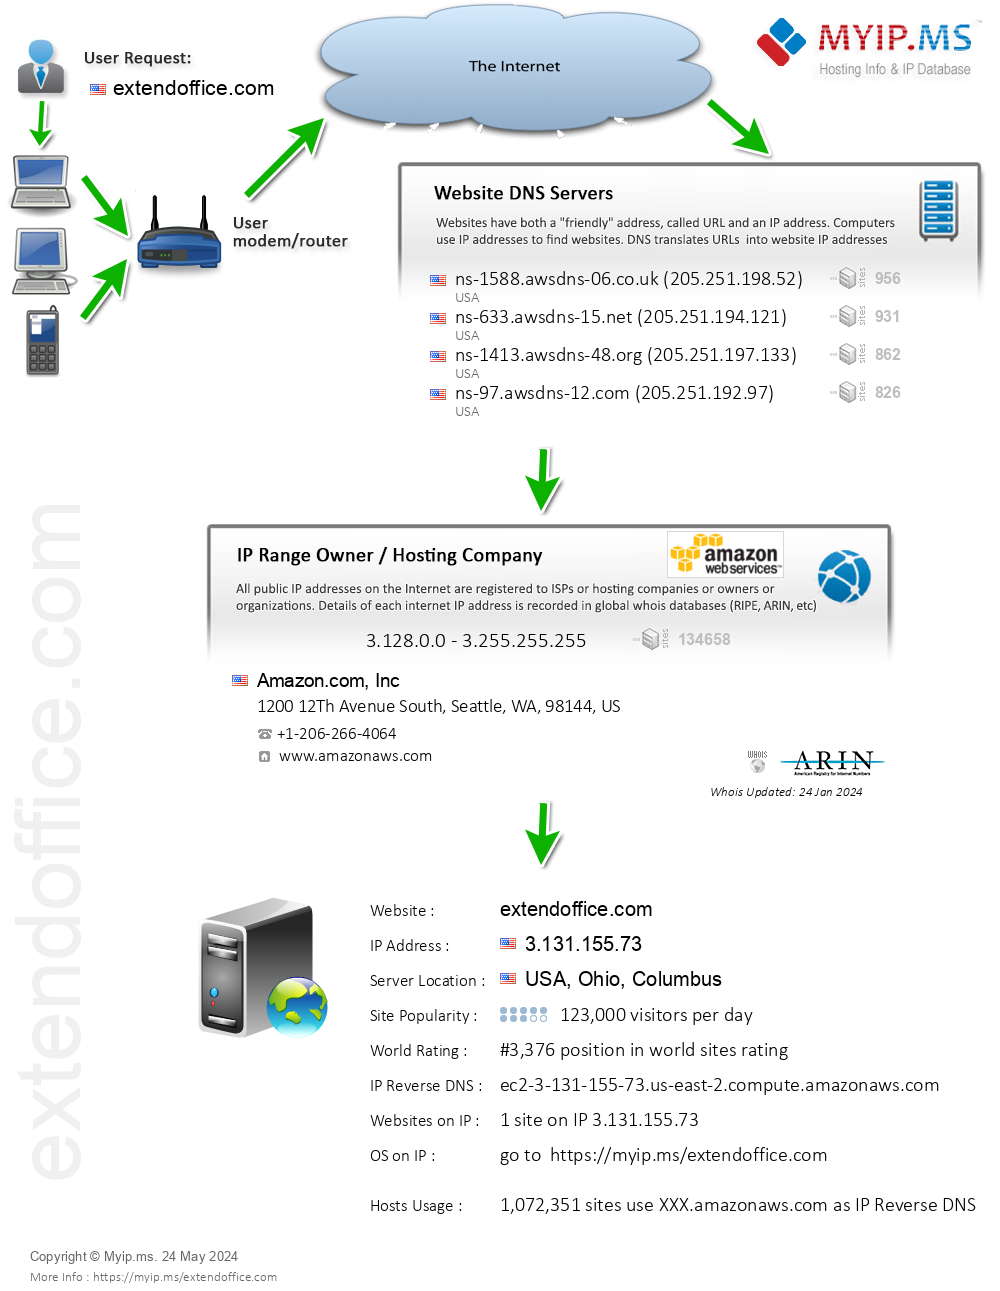 Extendoffice.com - Website Hosting Visual IP Diagram